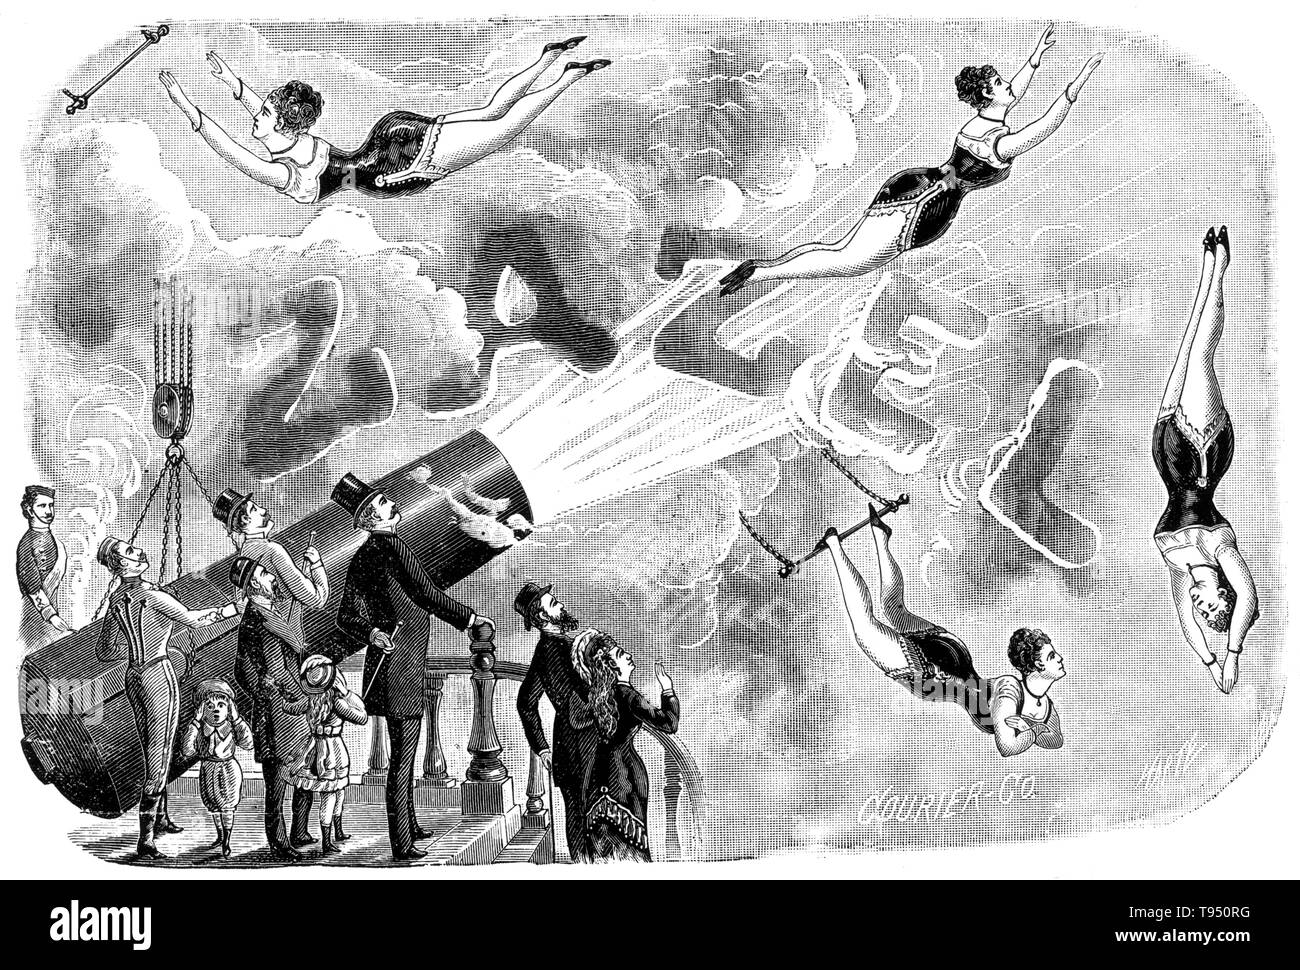 Rossa Matilda Richter (1863 - 1937), alias Zazel, war ein englischer trapeze Artist. 1871, William Leonard Jagd einen Mechanismus er ein "Projektor genannt entwickelt." Aus schweren Federn und indischen Gummi, es schoß eine Person weiterleiten, die schießpulver-basierte Explosion nur für Effekt. Erster Auftritt von Richter der Stunt war am 10. April 1877, an der Königlichen Aquarium in London. Sie reiste 20 Fuß und im Netz landete. Stockfoto